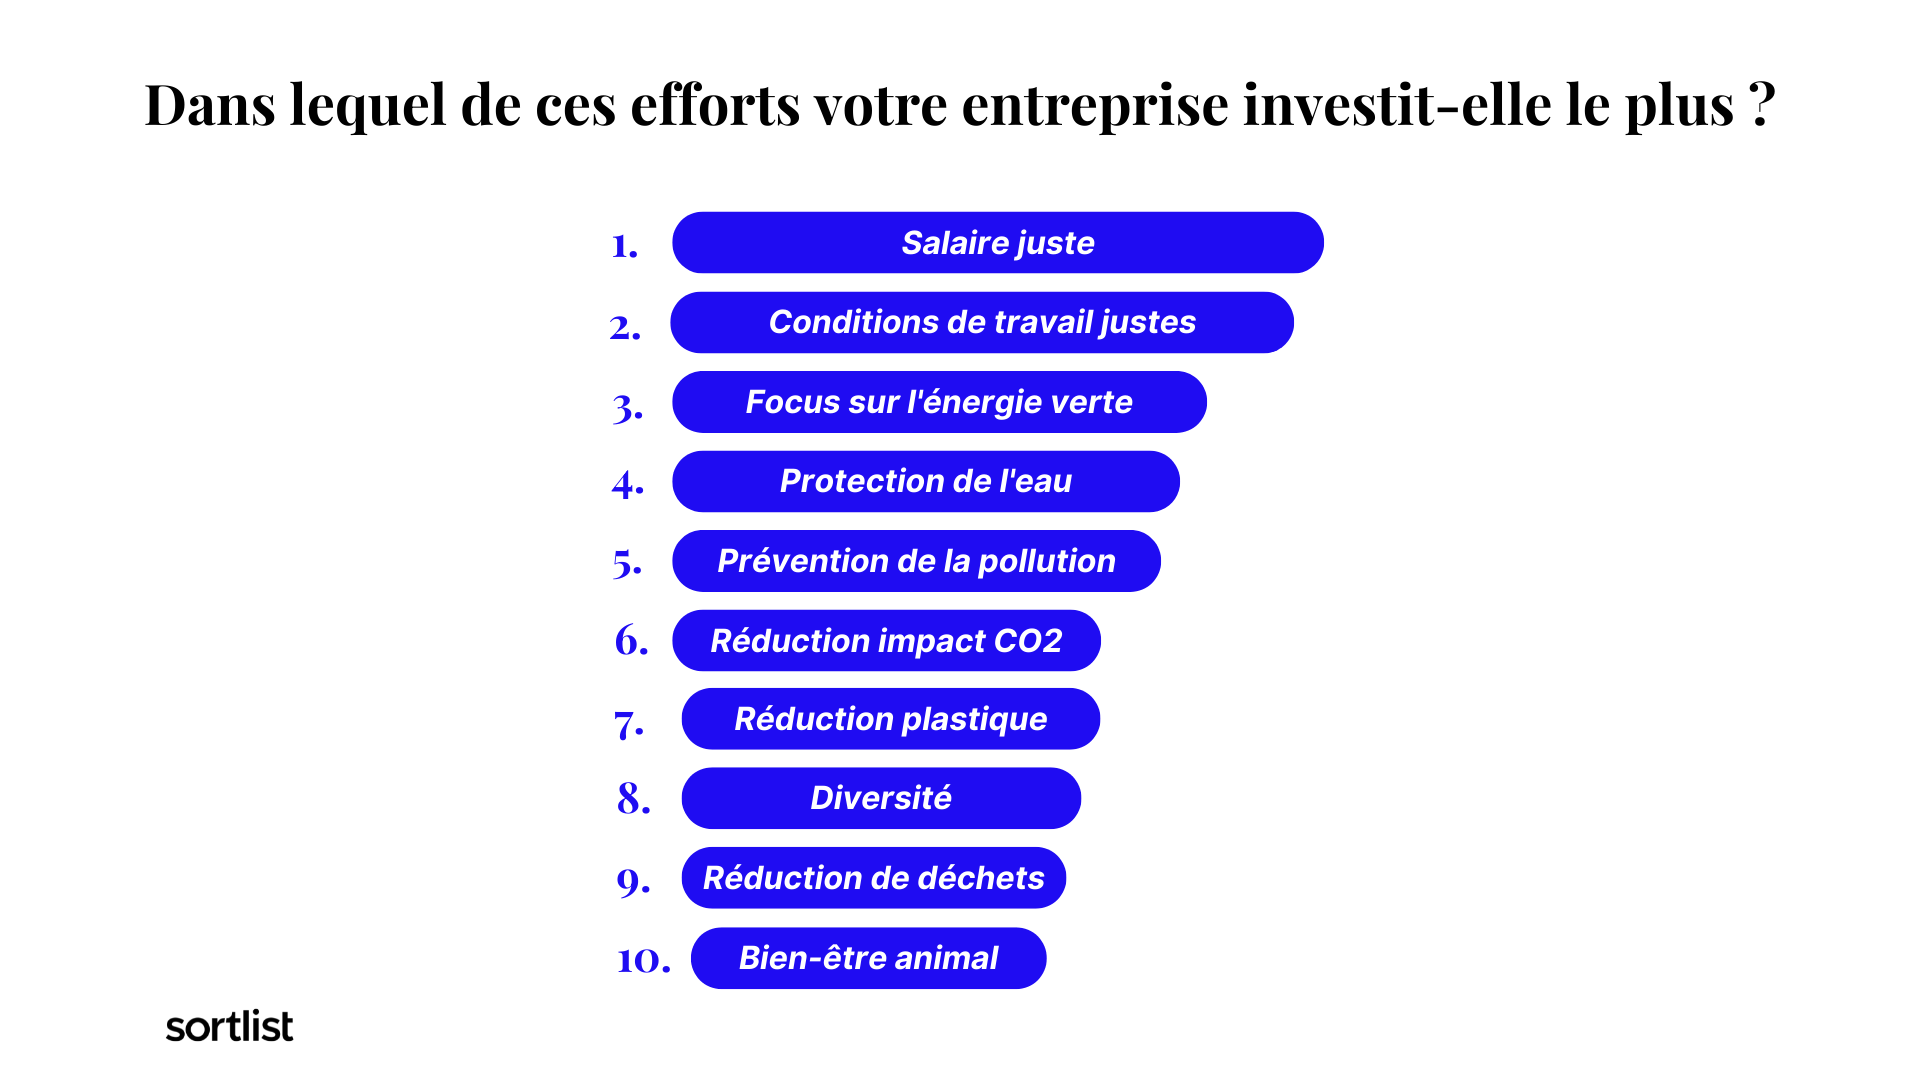 Top 10 des initiatives de marketing durable dans lesquelles les entreprises investissent le plus